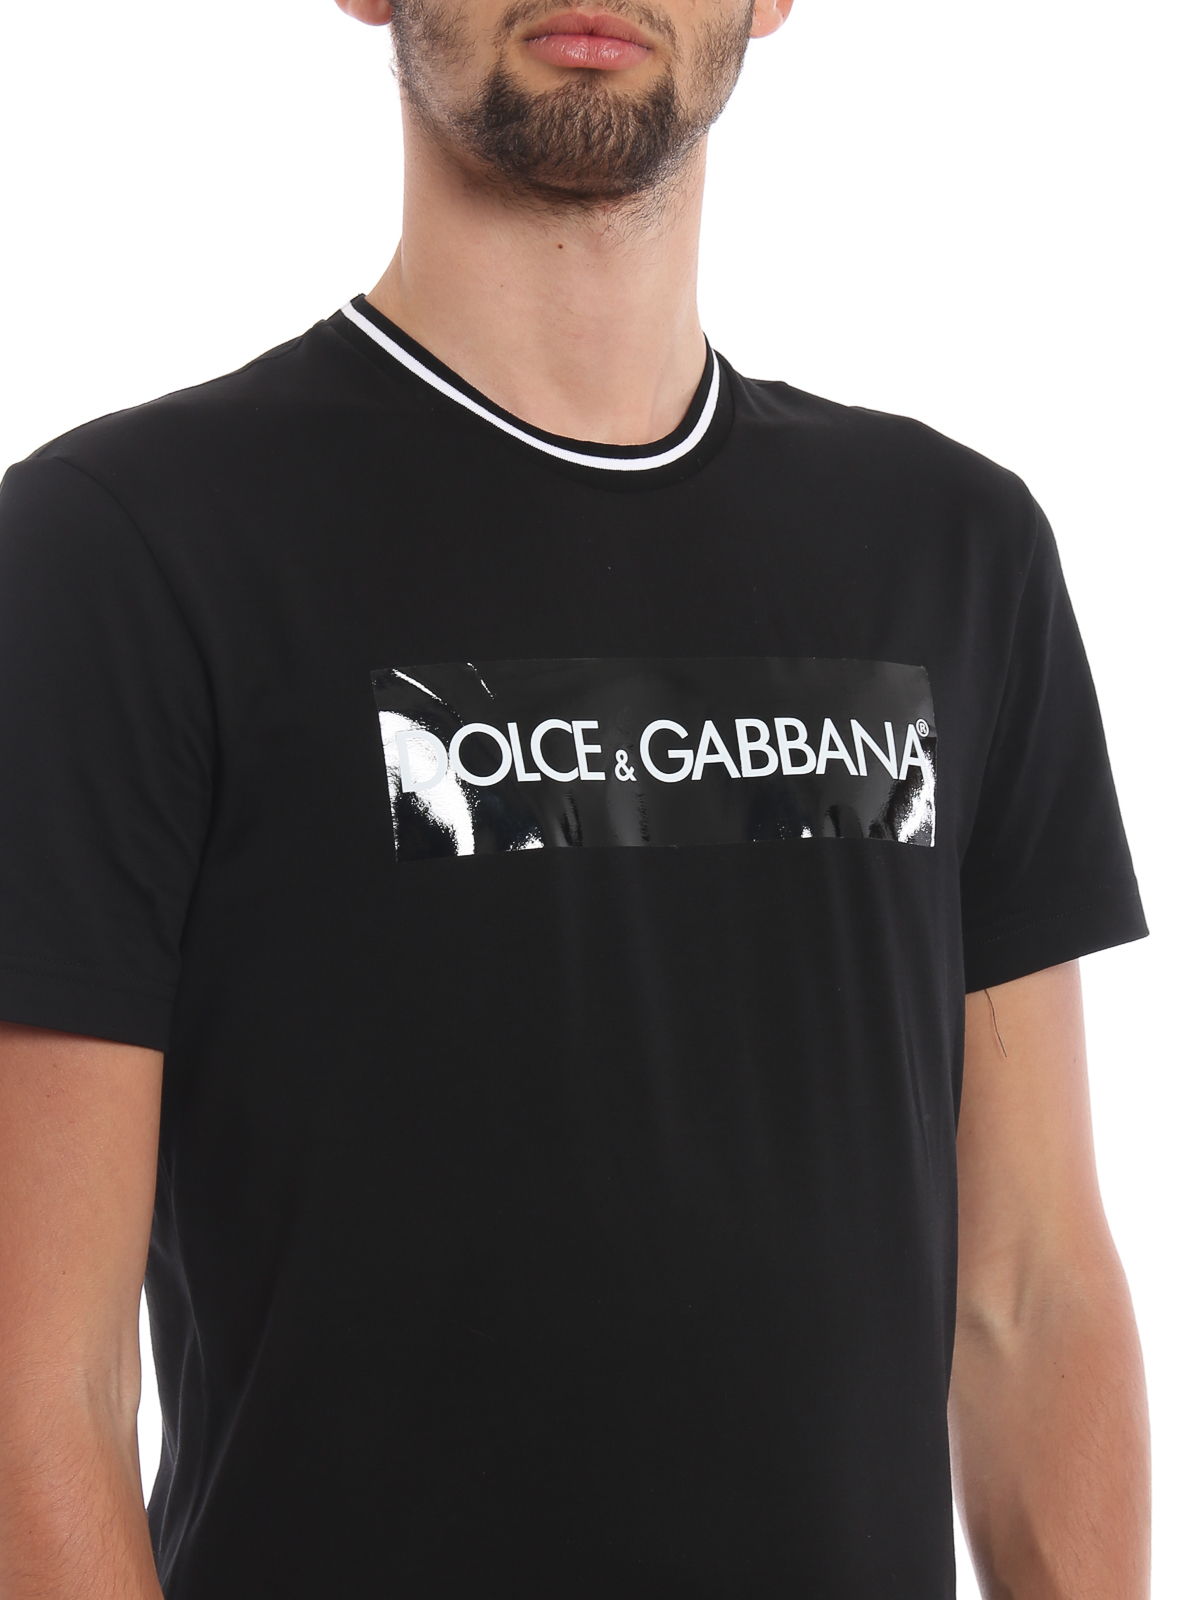 dolce and gabbana tape t shirt